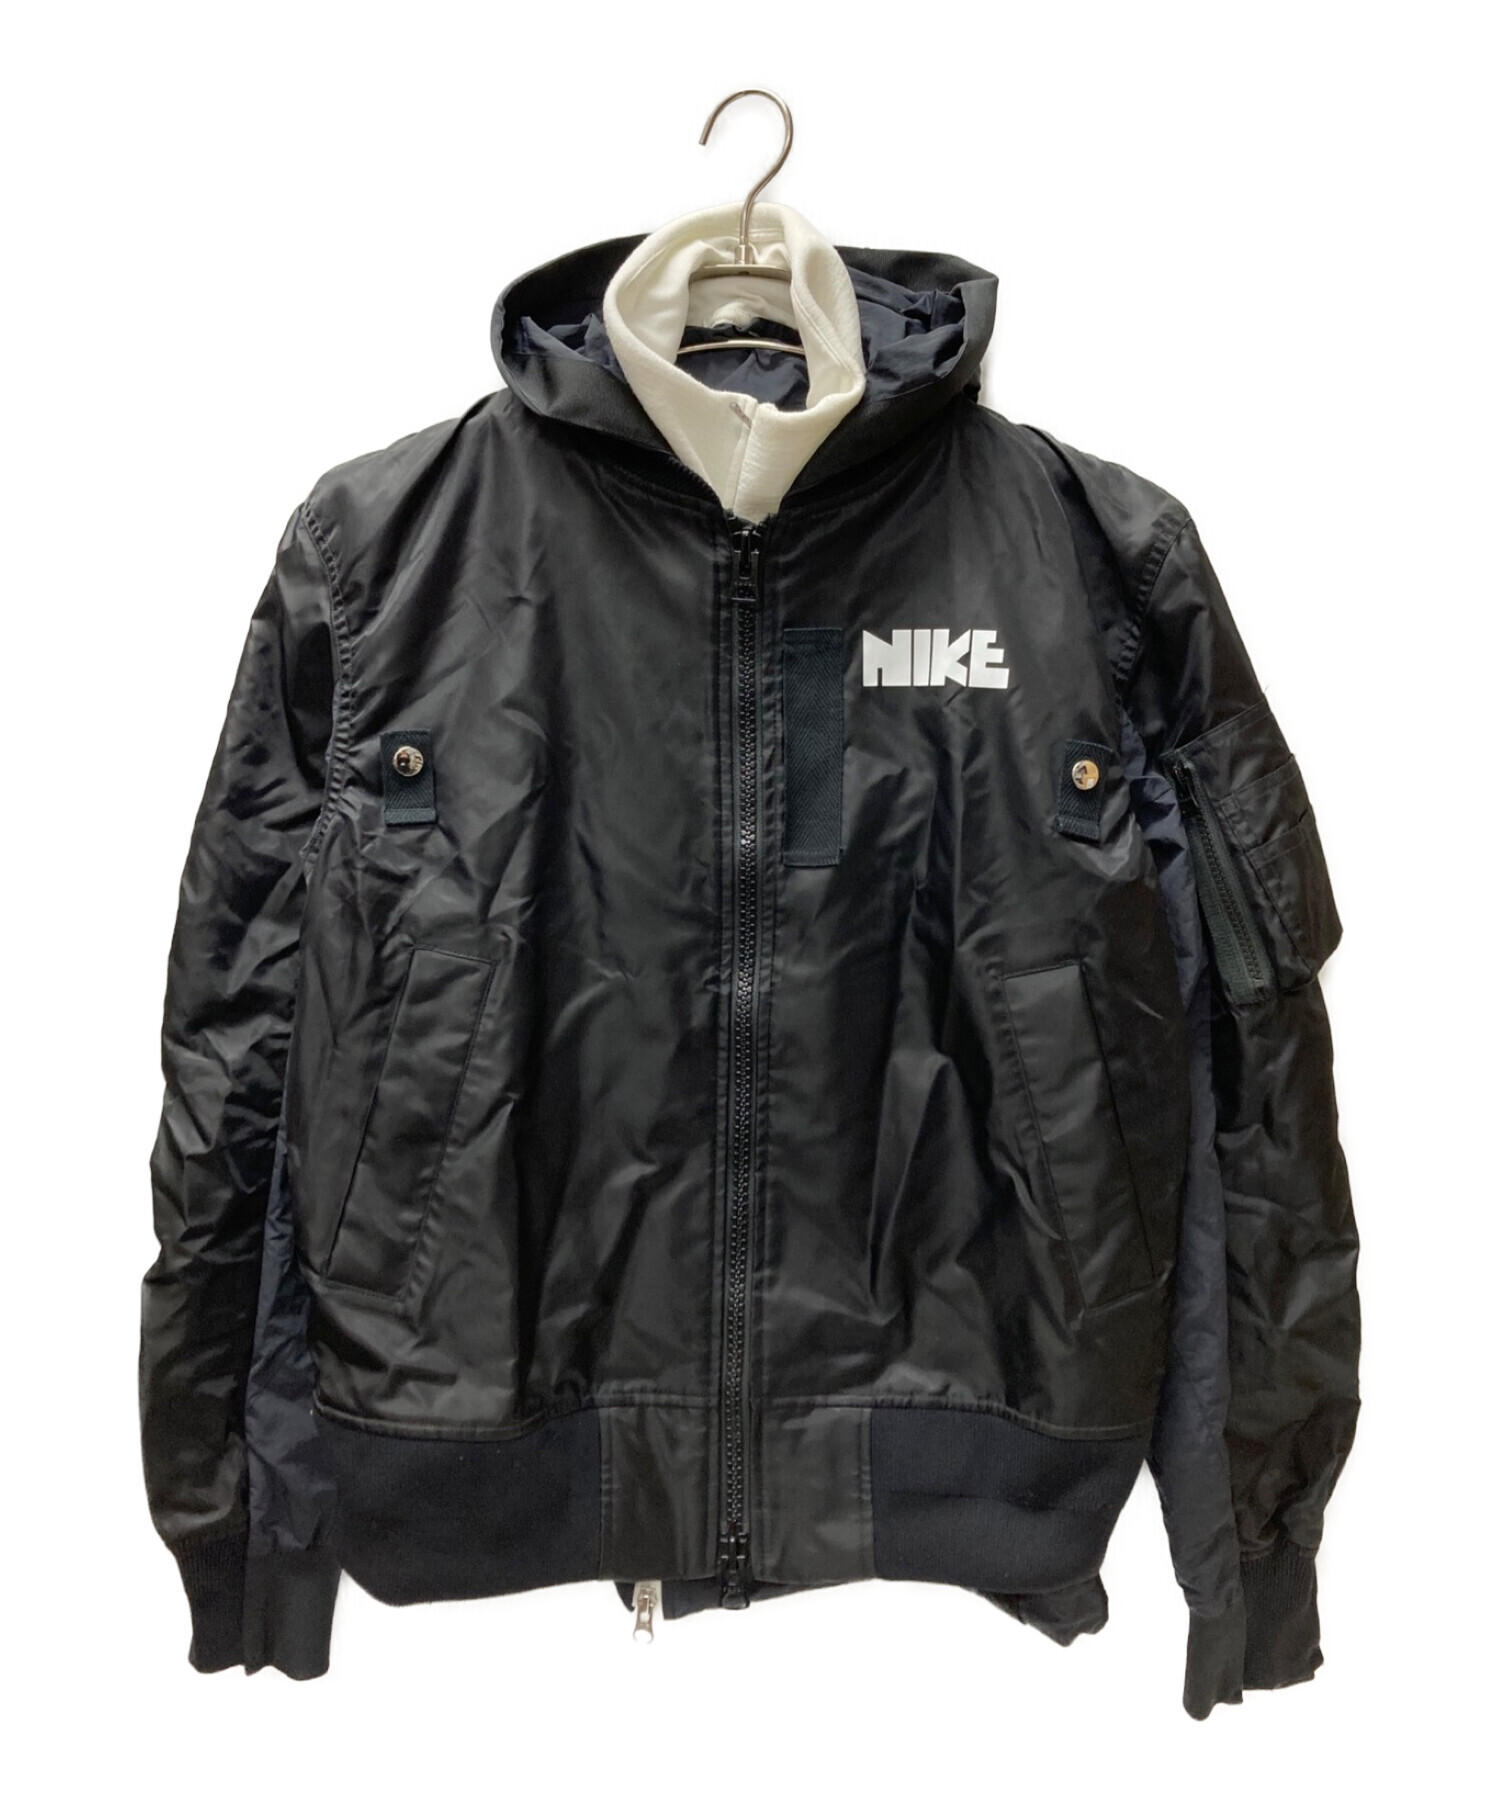 NIKE (ナイキ) sacai (サカイ) ドッキング ボンバー ジャケット ブラック サイズ:S